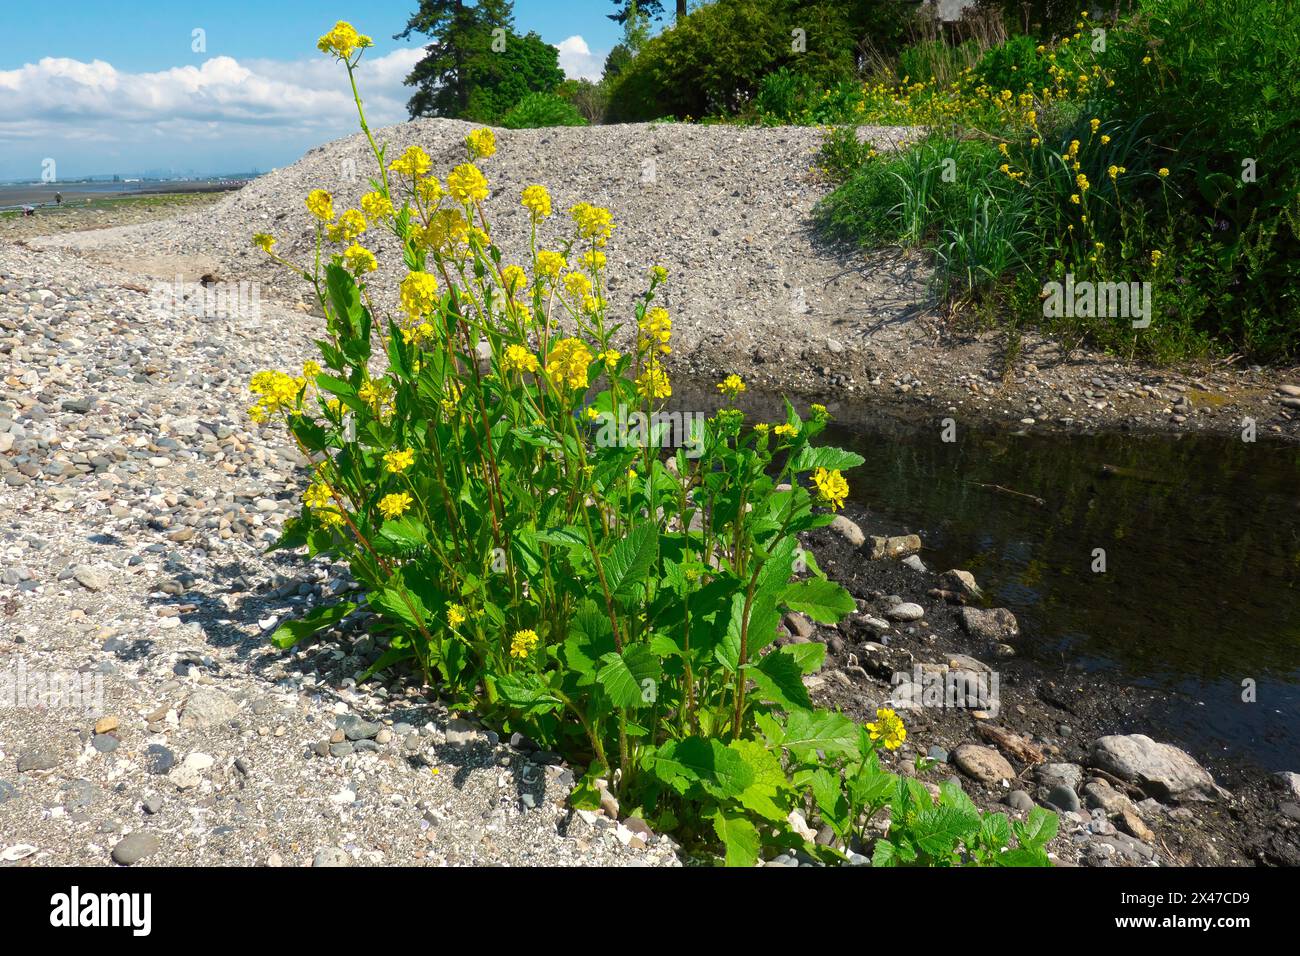 Charlock Mustard, Wild Mustard oder Field Mustard (Sinapis arvensis) – wächst am Ozean am Crescent Beach, B.C., Kanada. Stockfoto